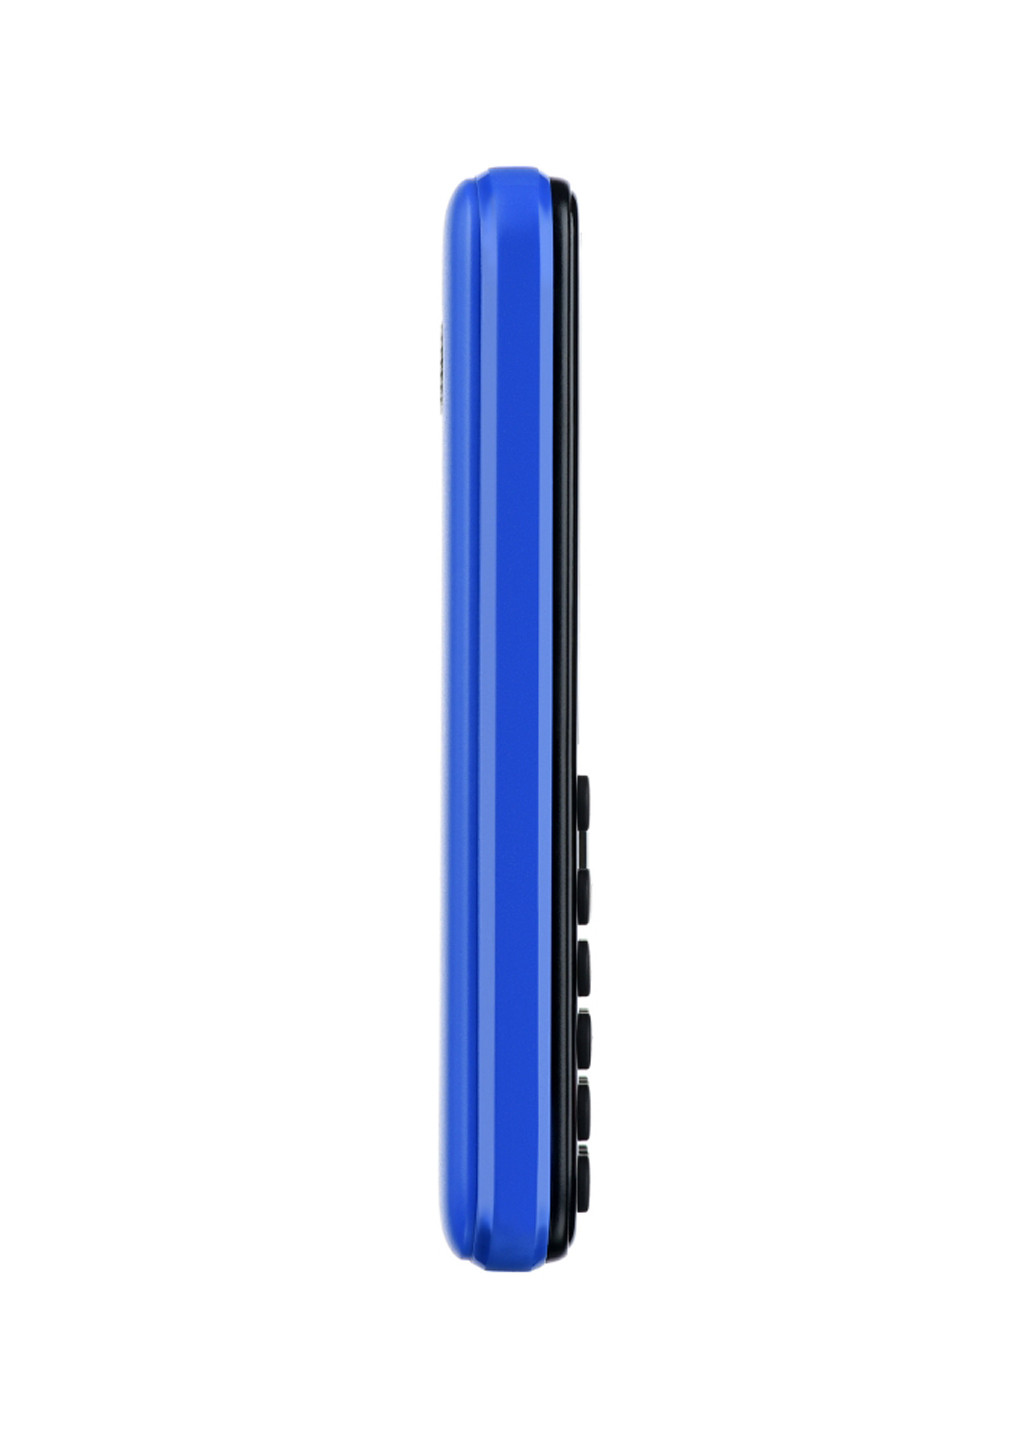 Мобильный телефон (680051628653) 2E 2E S180 DUALSIM Blue синий